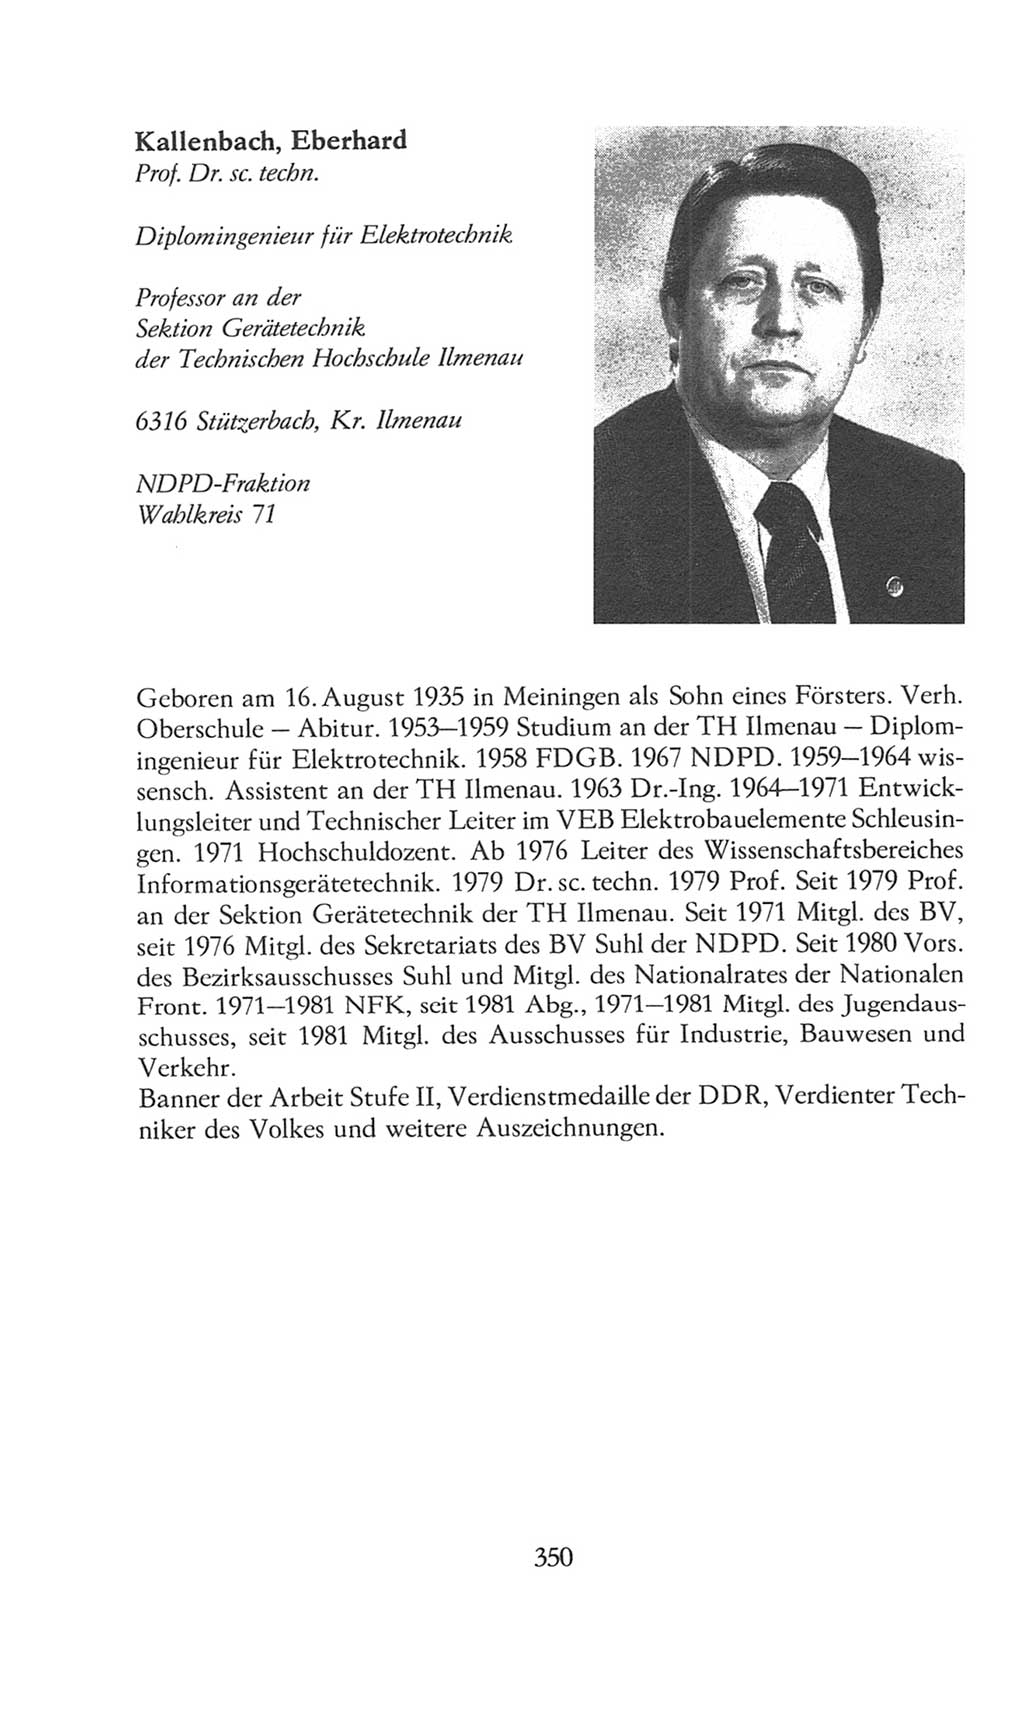 Volkskammer (VK) der Deutschen Demokratischen Republik (DDR), 8. Wahlperiode 1981-1986, Seite 350 (VK. DDR 8. WP. 1981-1986, S. 350)